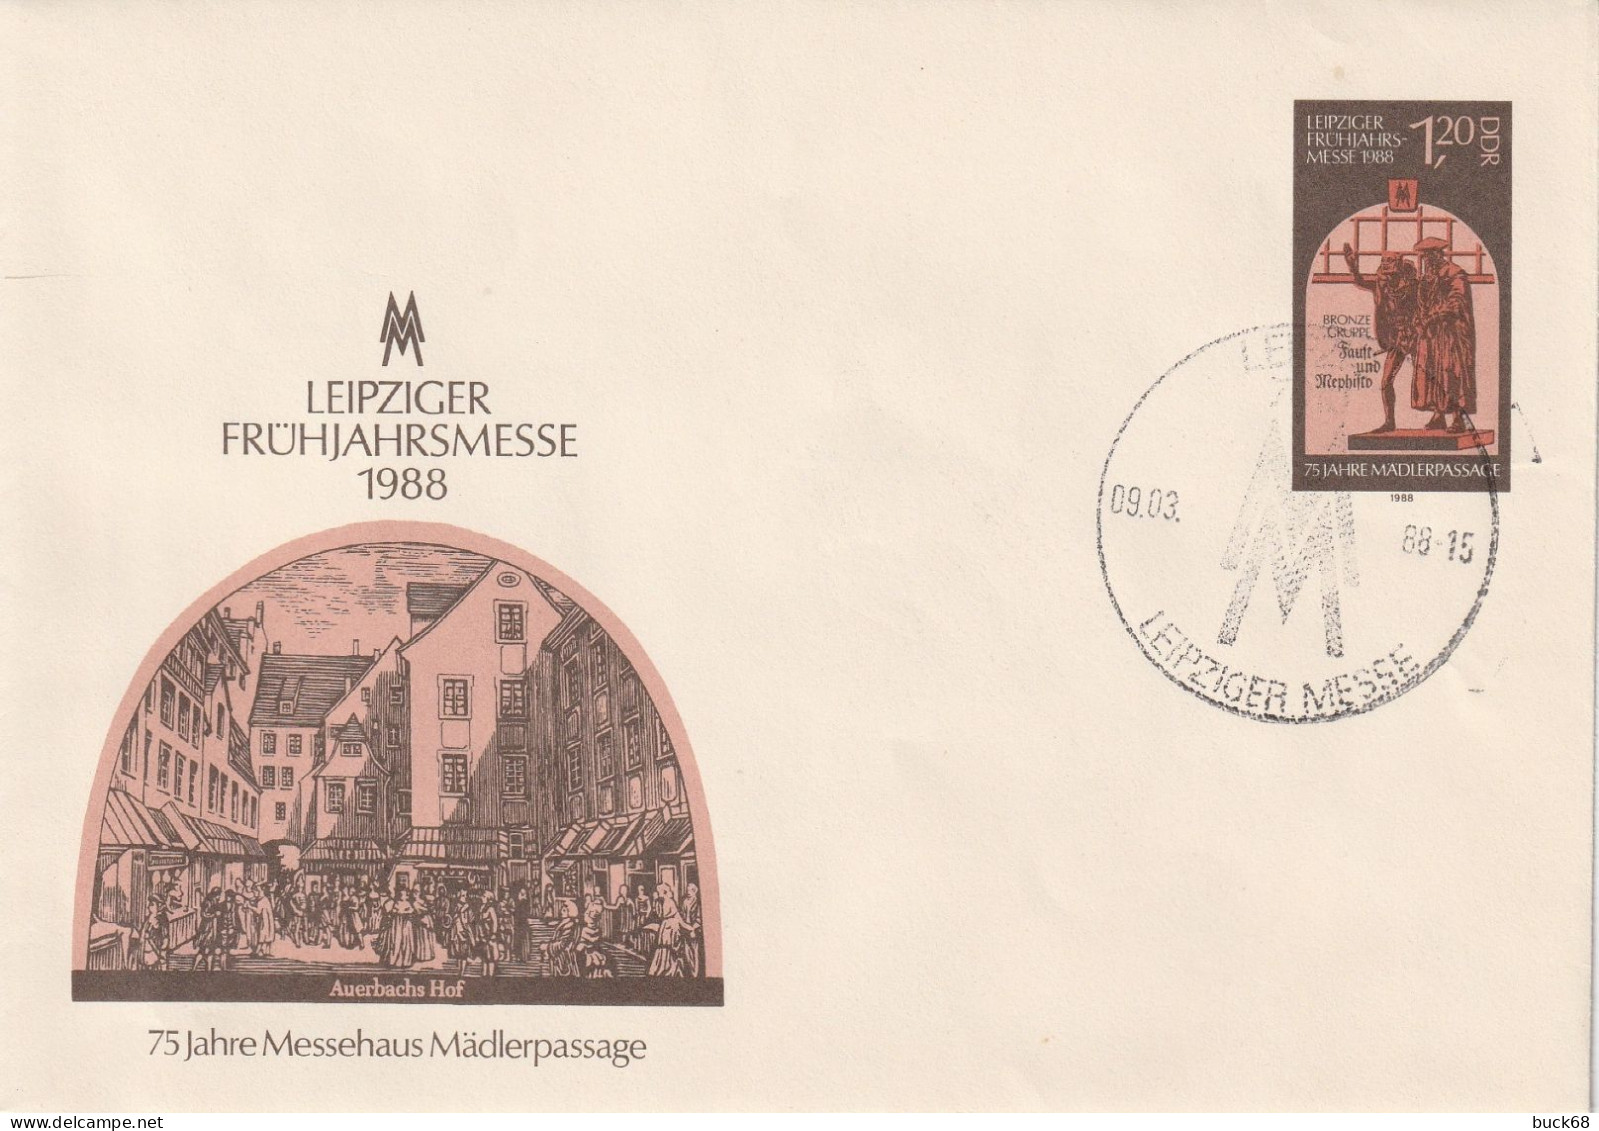 ALLEMAGNE GERMANY RDA DDR 2766a FDC Ersttagbrief Ganzsache Entier U8 Leipziger Frühjahrmesse Auerbachs Hof 09.03.1988 - 1981-1990